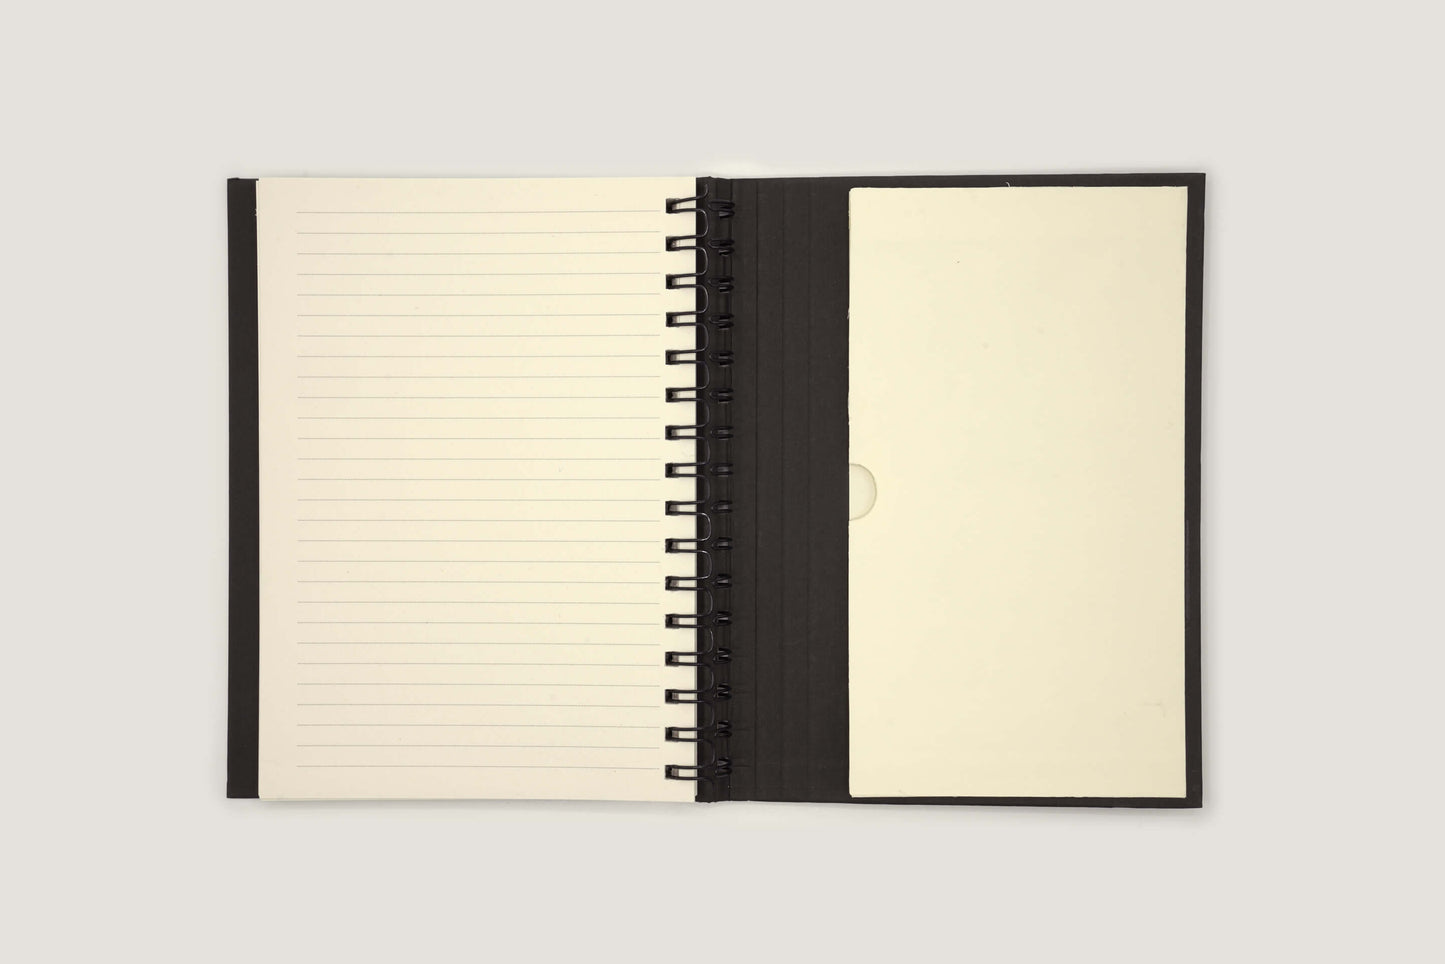 hahnemuhle schetsdagboek a5 met ringband zwart open laatste pagina met vakje